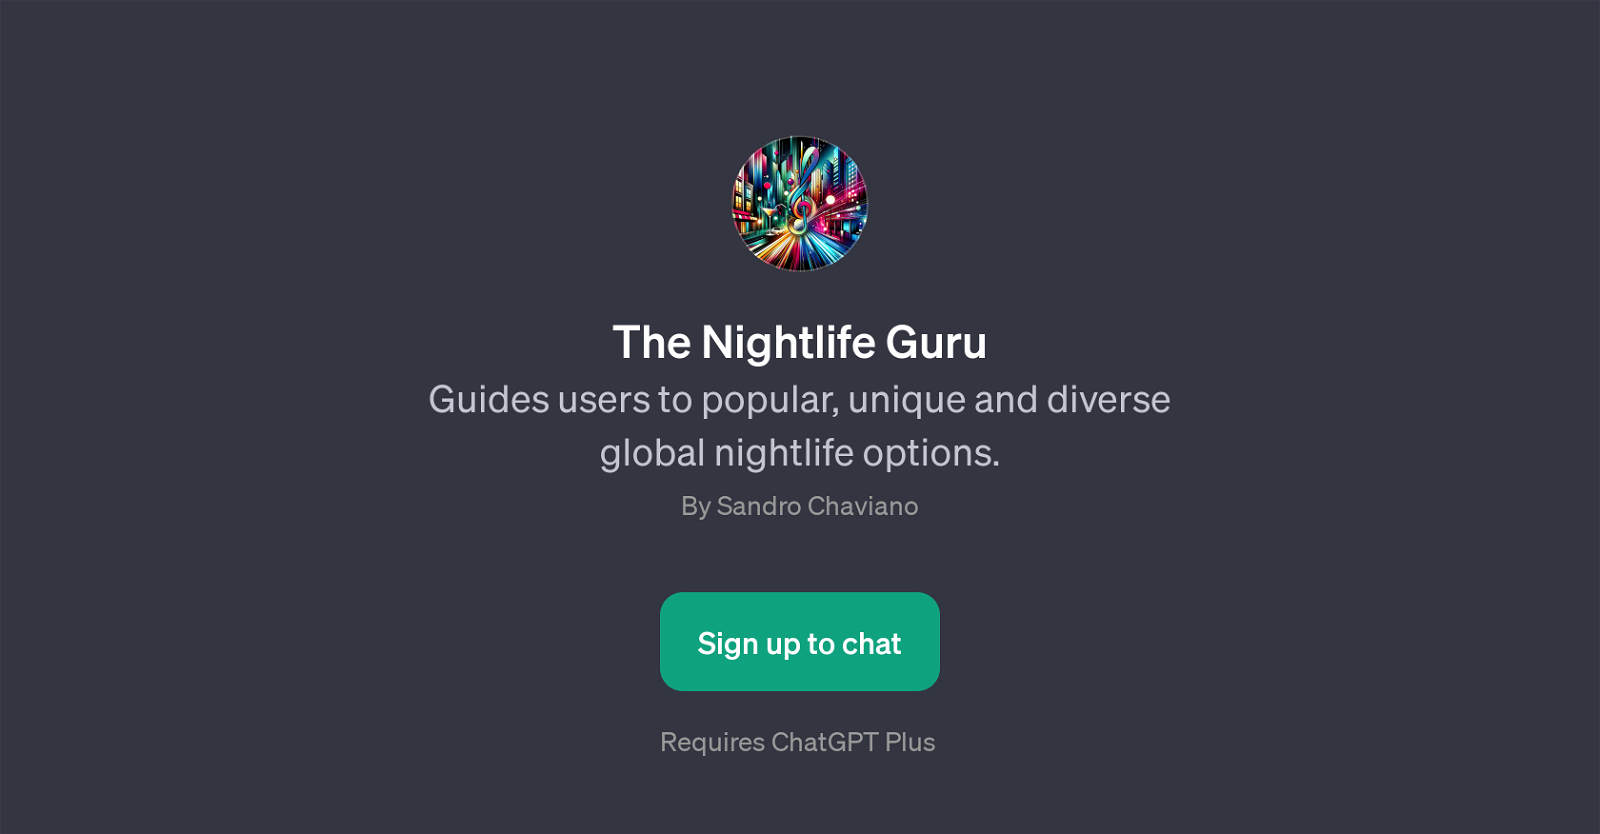 The Nightlife Guru website